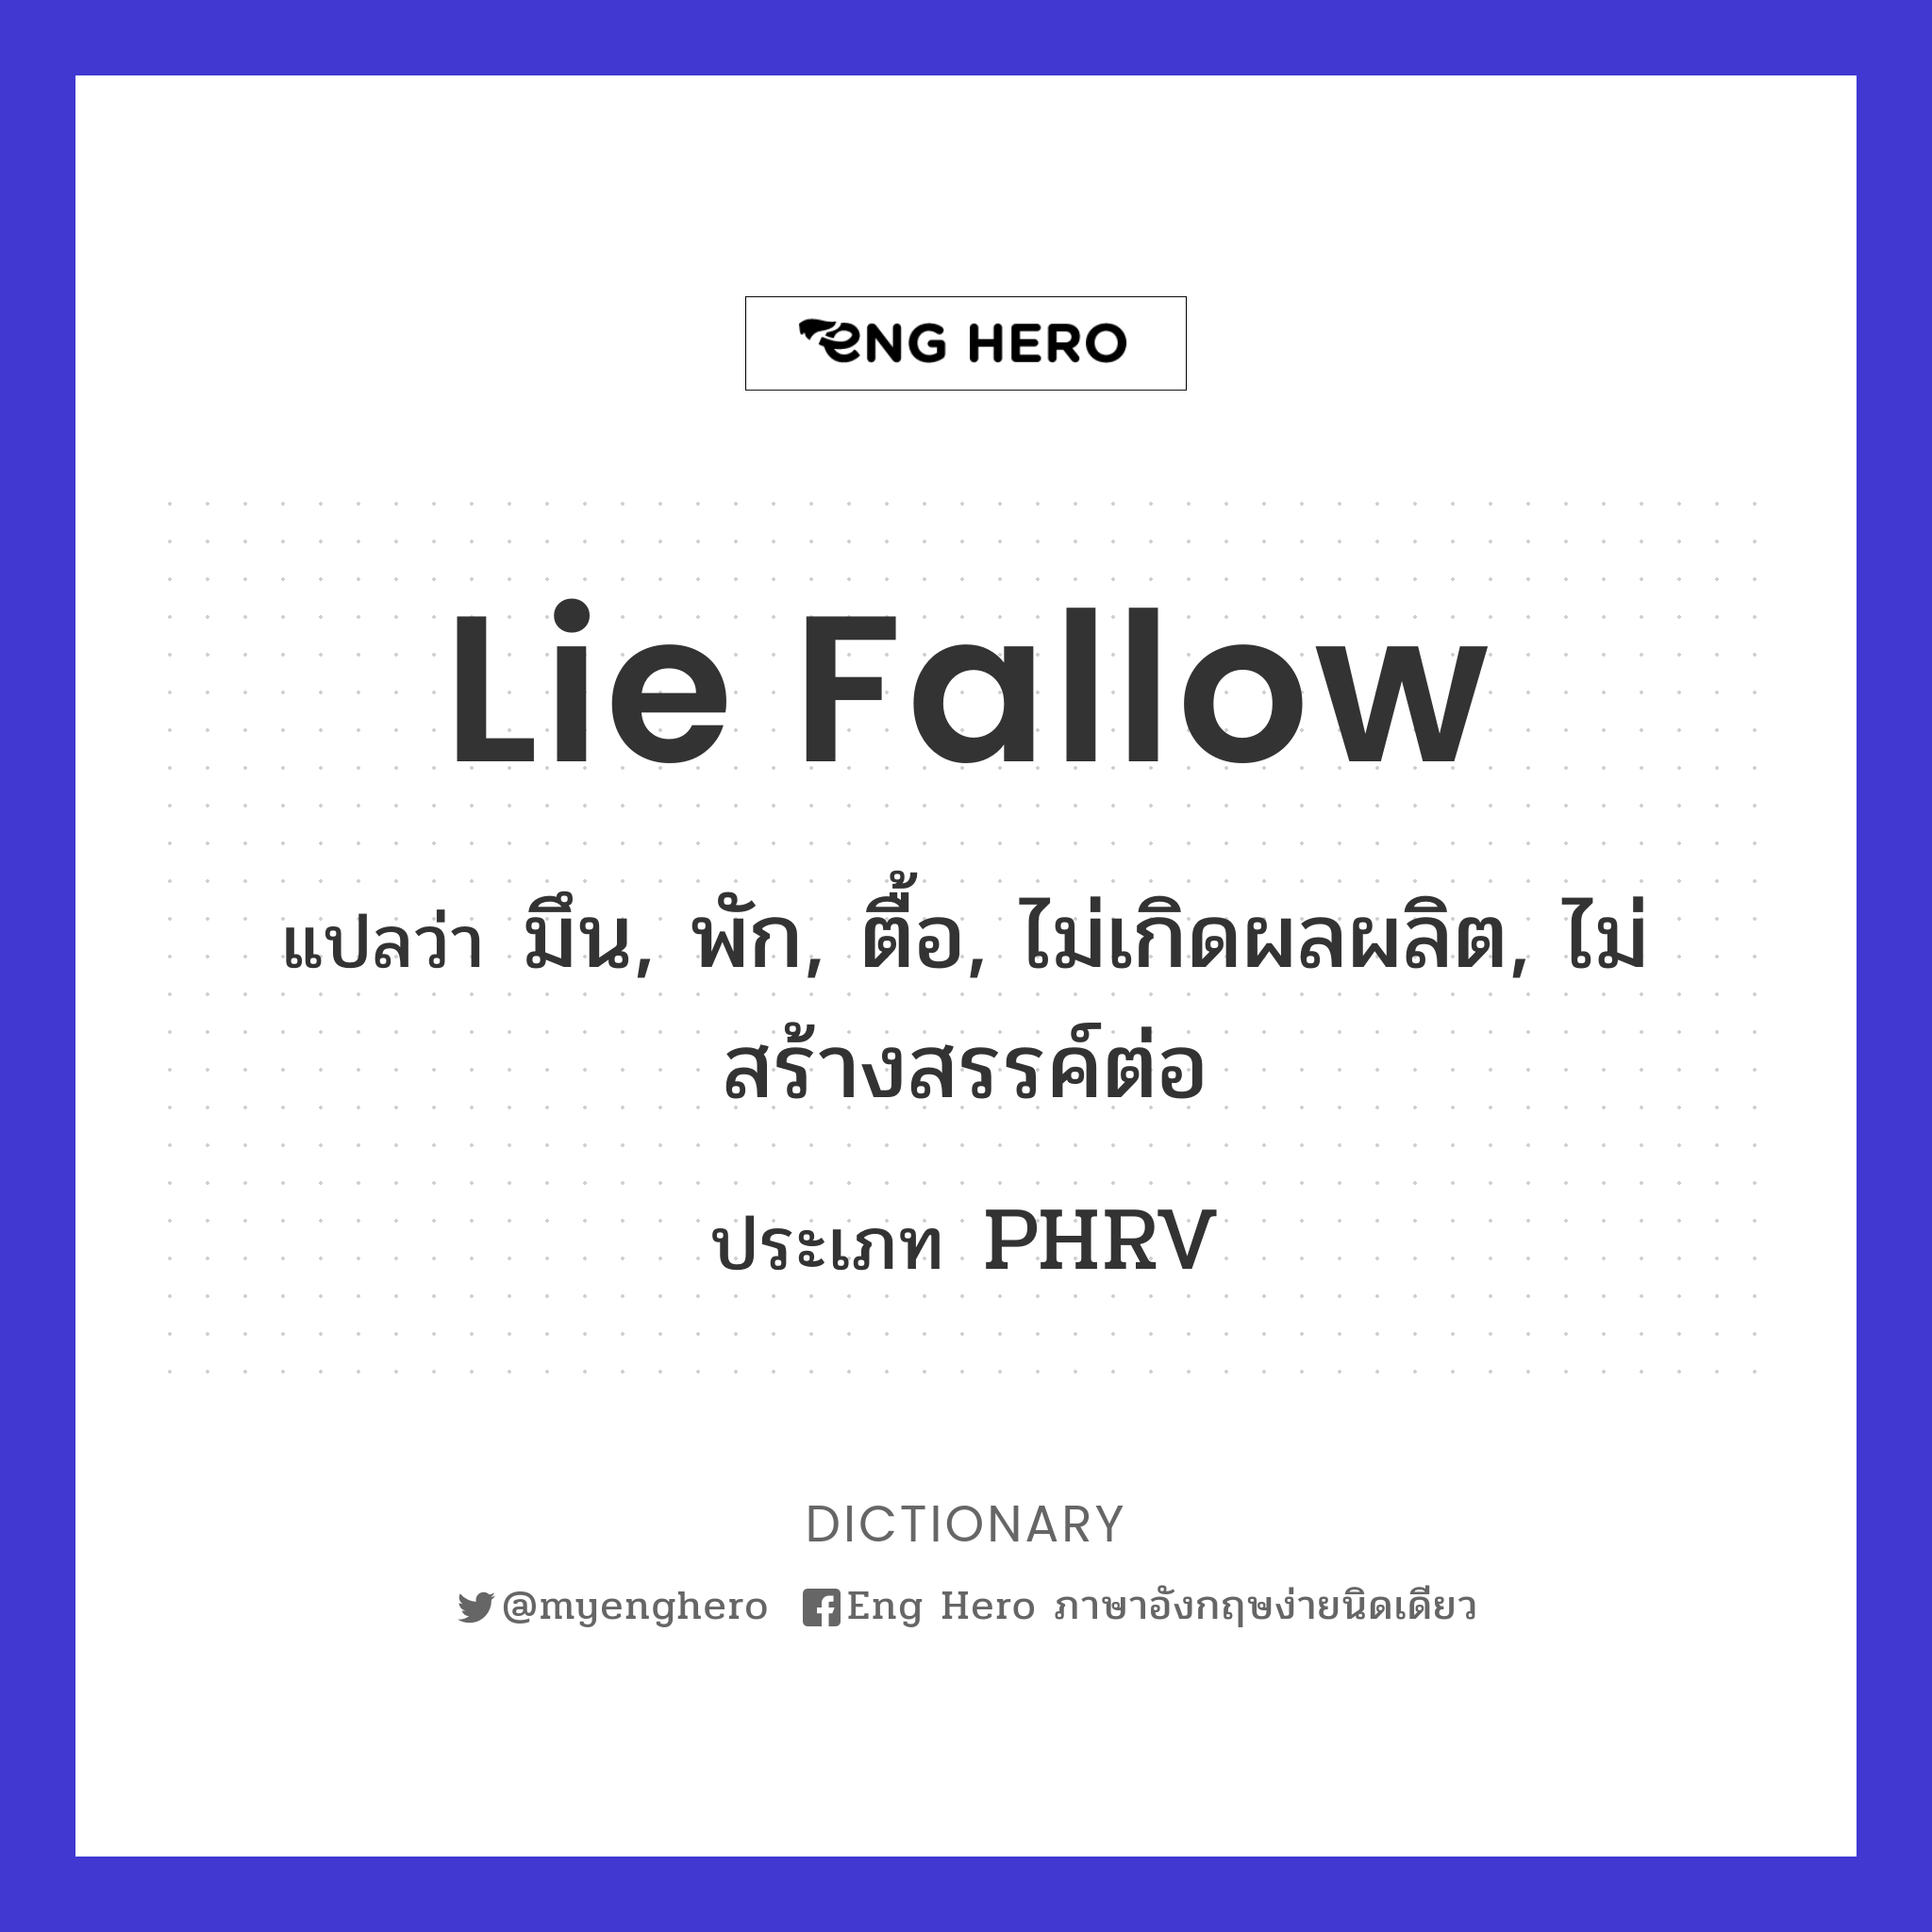 lie fallow